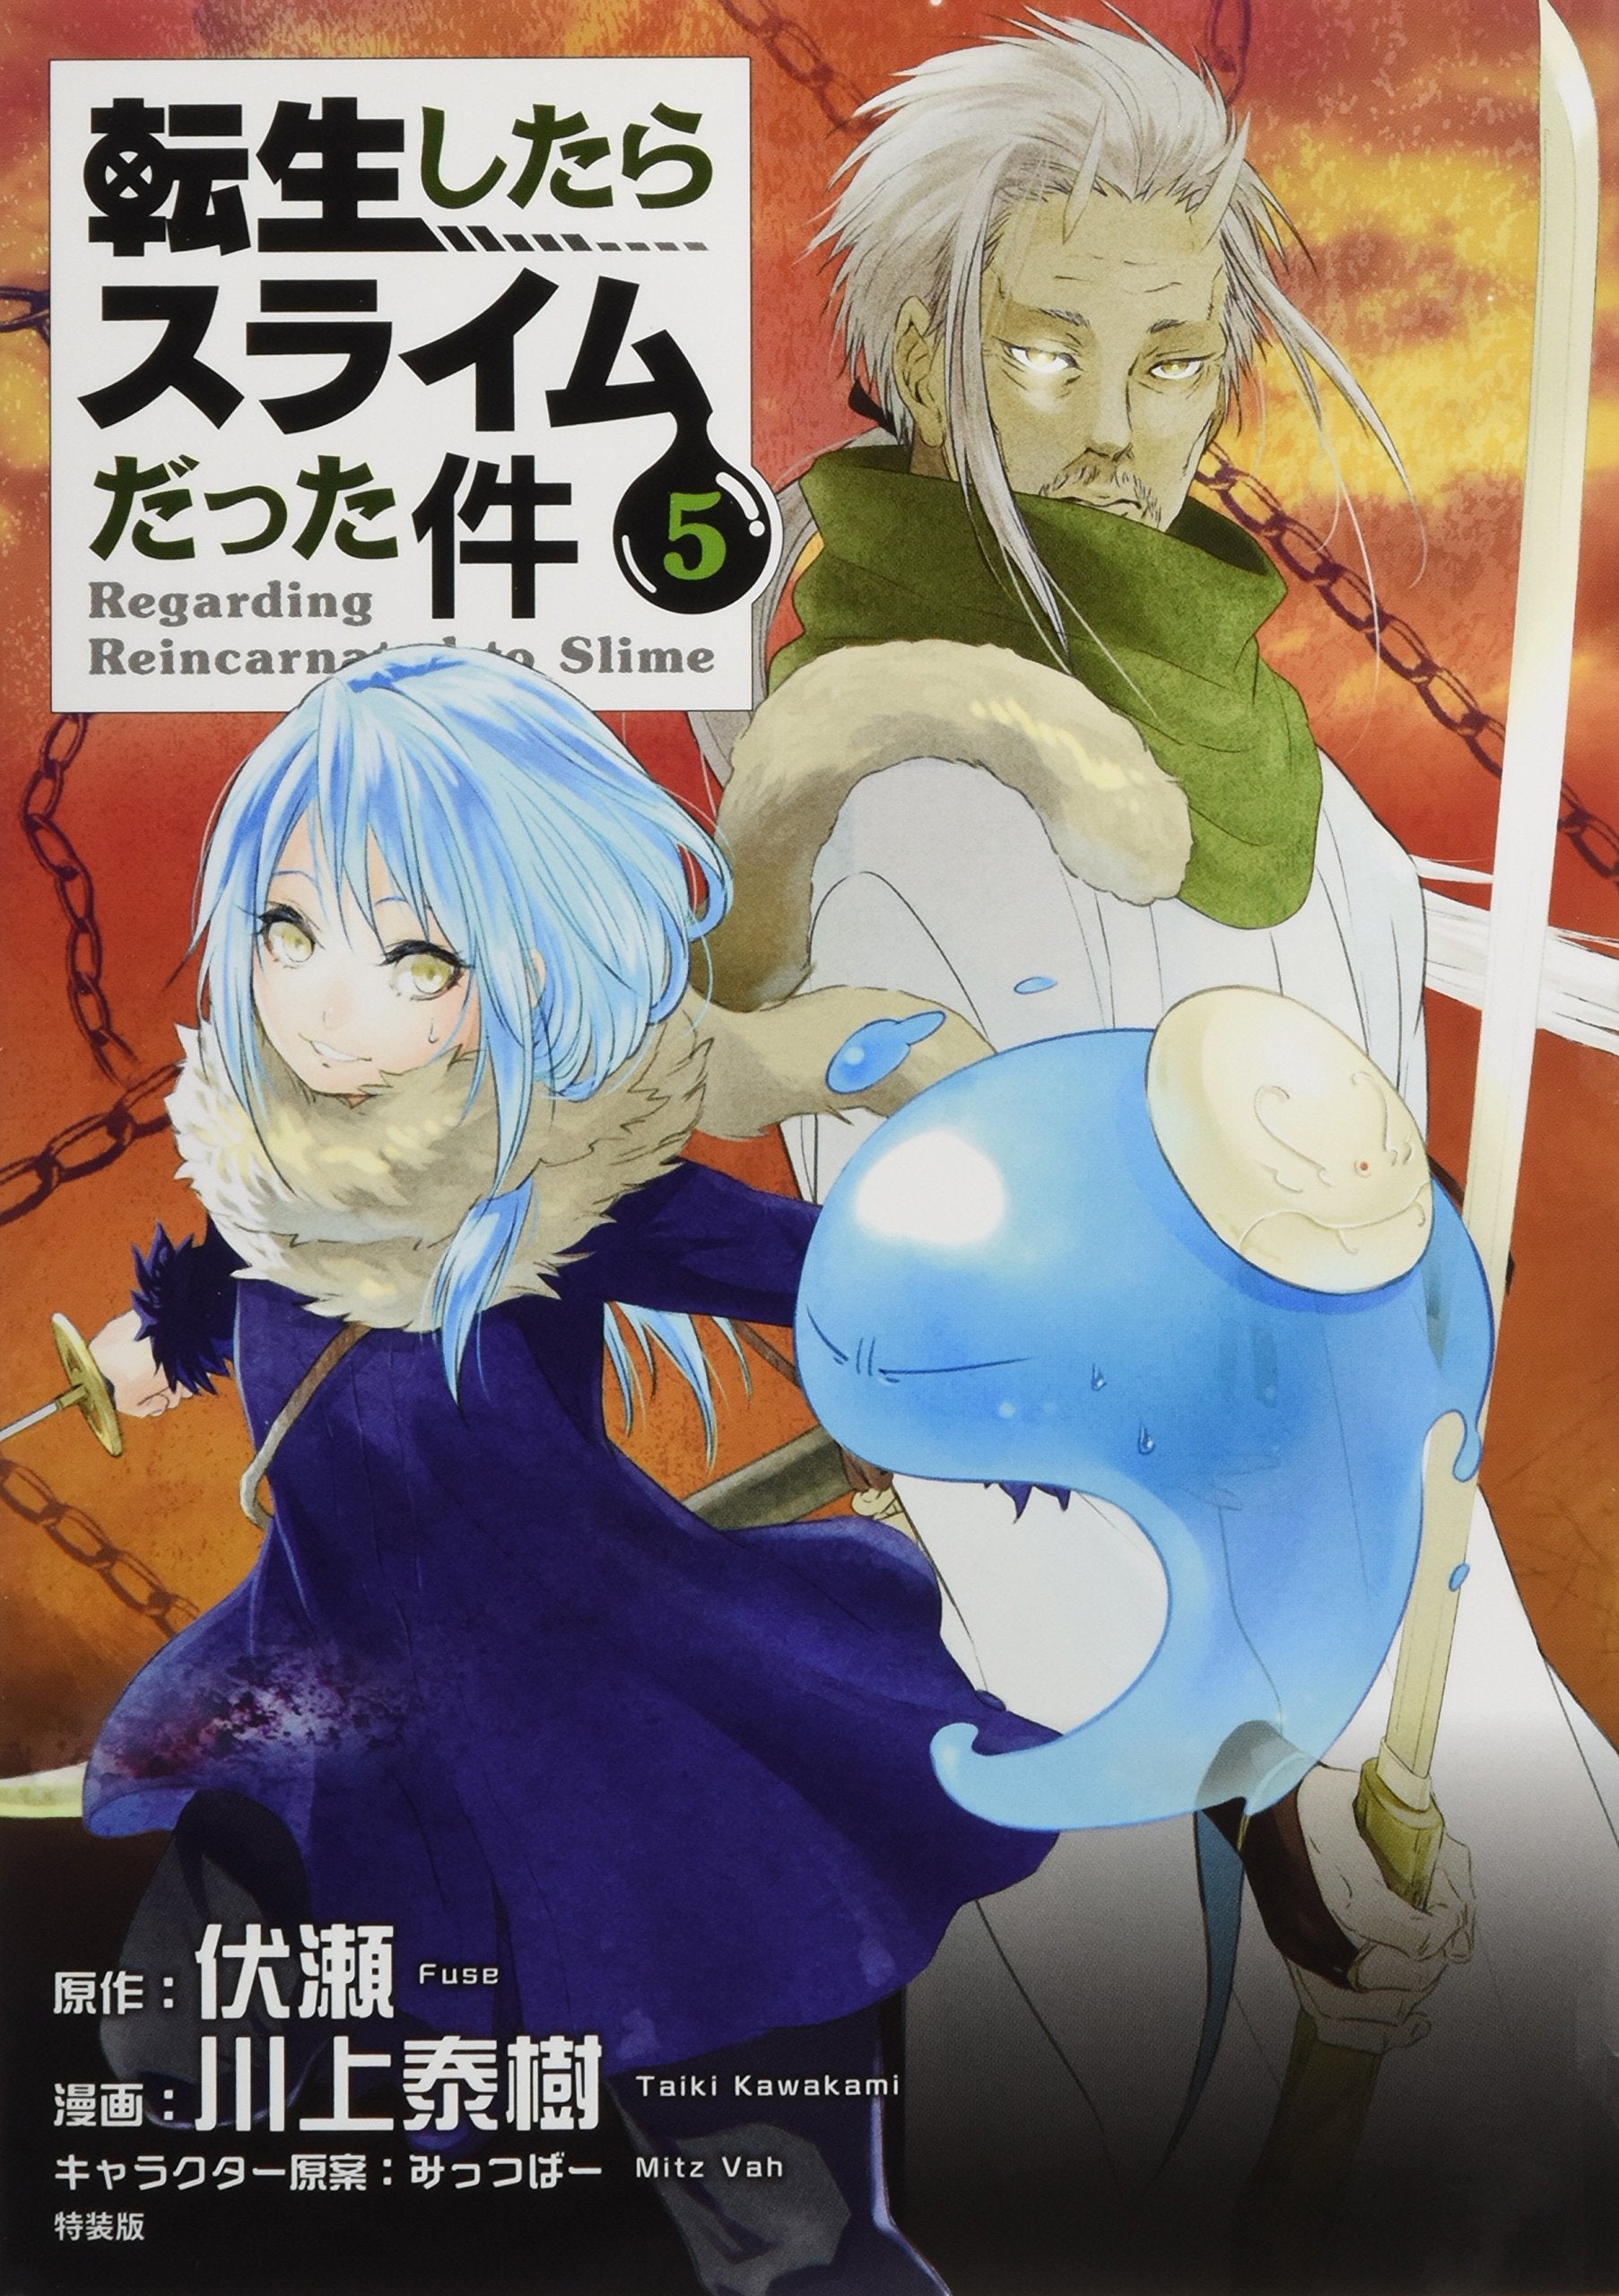 That Time I Got Reincarnated as a Slime (Tensei shitara Slime Datta Ken) 5  (Light Novel) – Japanese Book Store